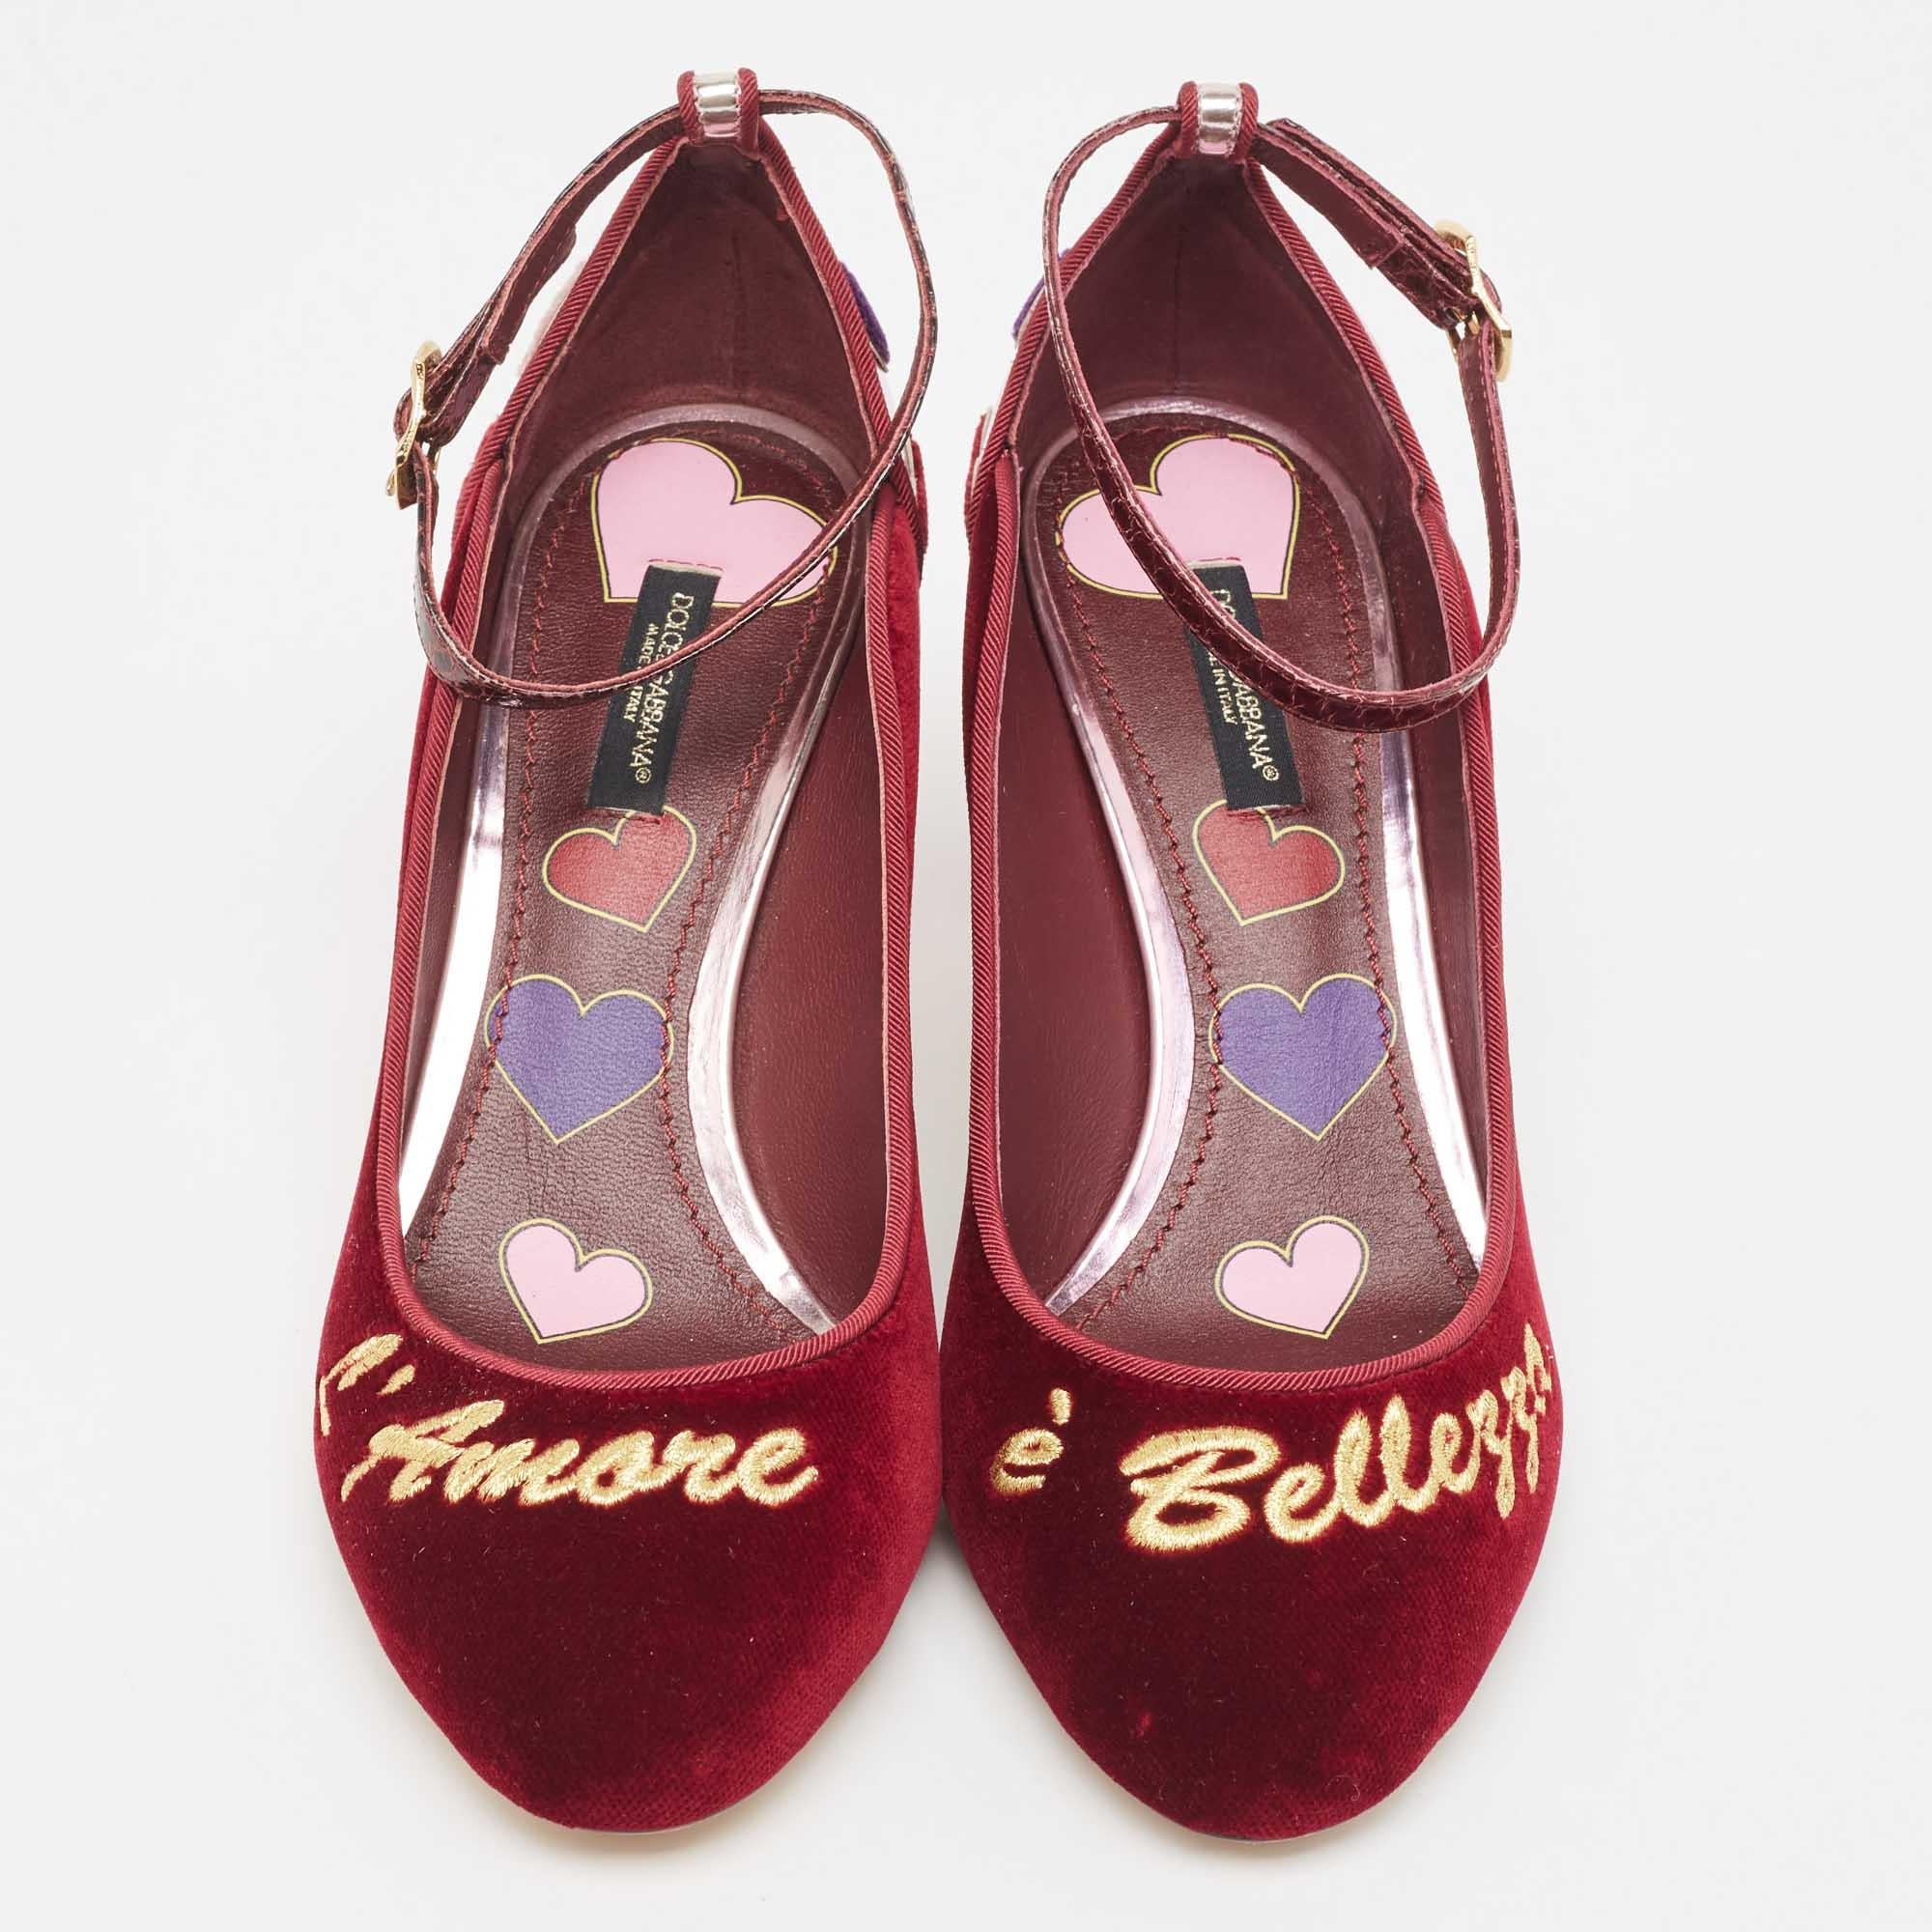 Setzen Sie ein Zeichen mit diesen Dolce & Gabbana Pumps für Damen. Diese makellos gefertigten, schicken Absätze bieten sowohl Mode als auch Komfort und werten Ihren Look mit jedem anmutigen Schritt auf.

Enthält: Original Box

